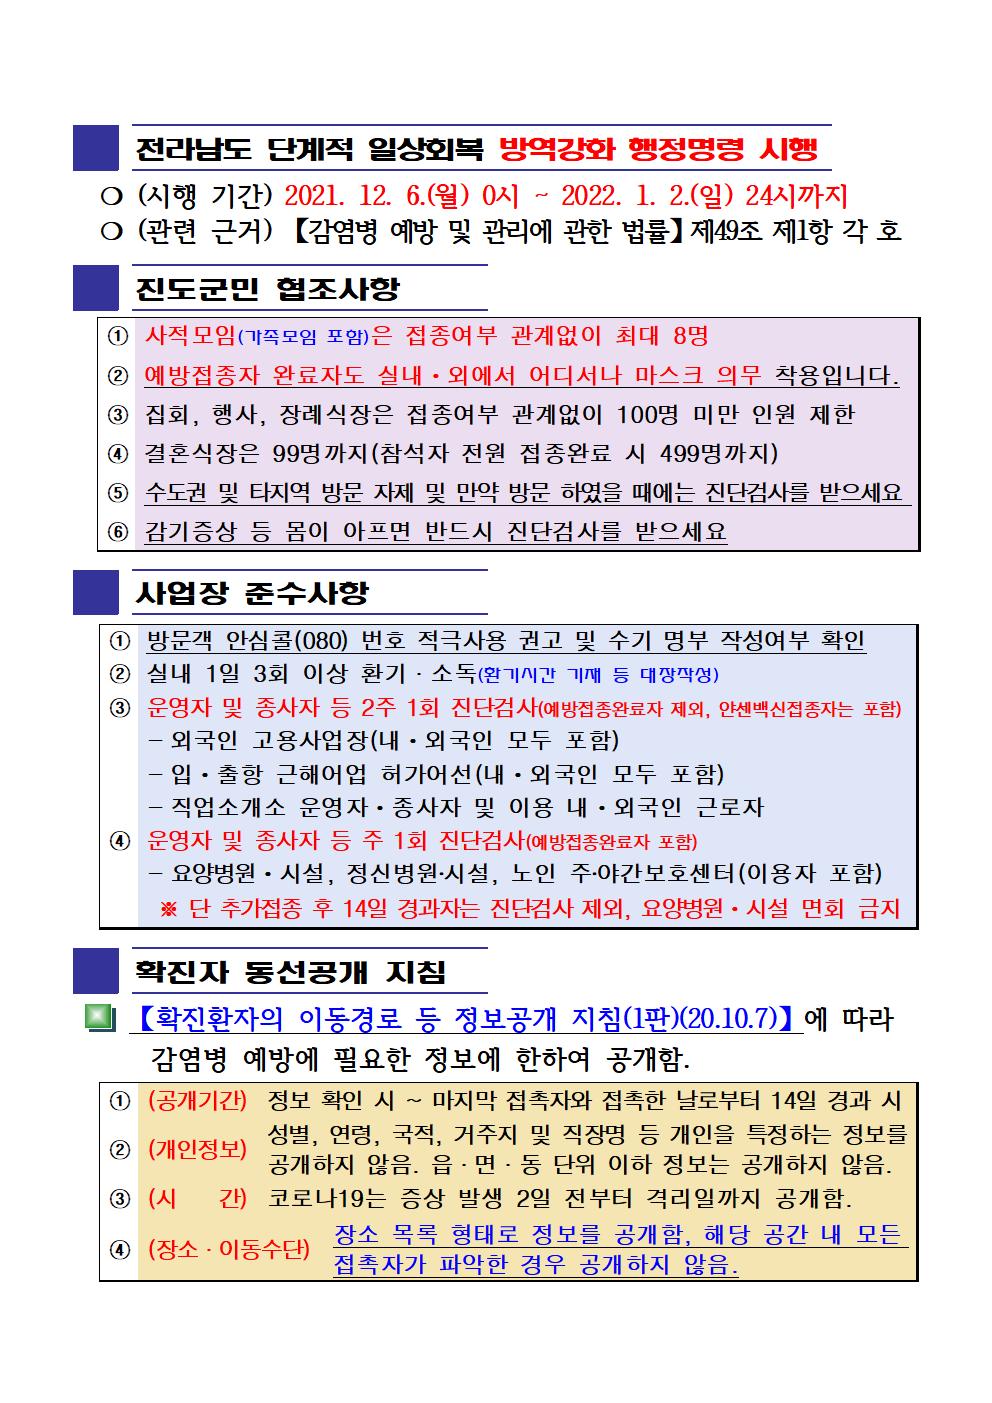 2021년 코로나 19 대응 일일상황보고(12월 13일 24시 기준) 첨부#2